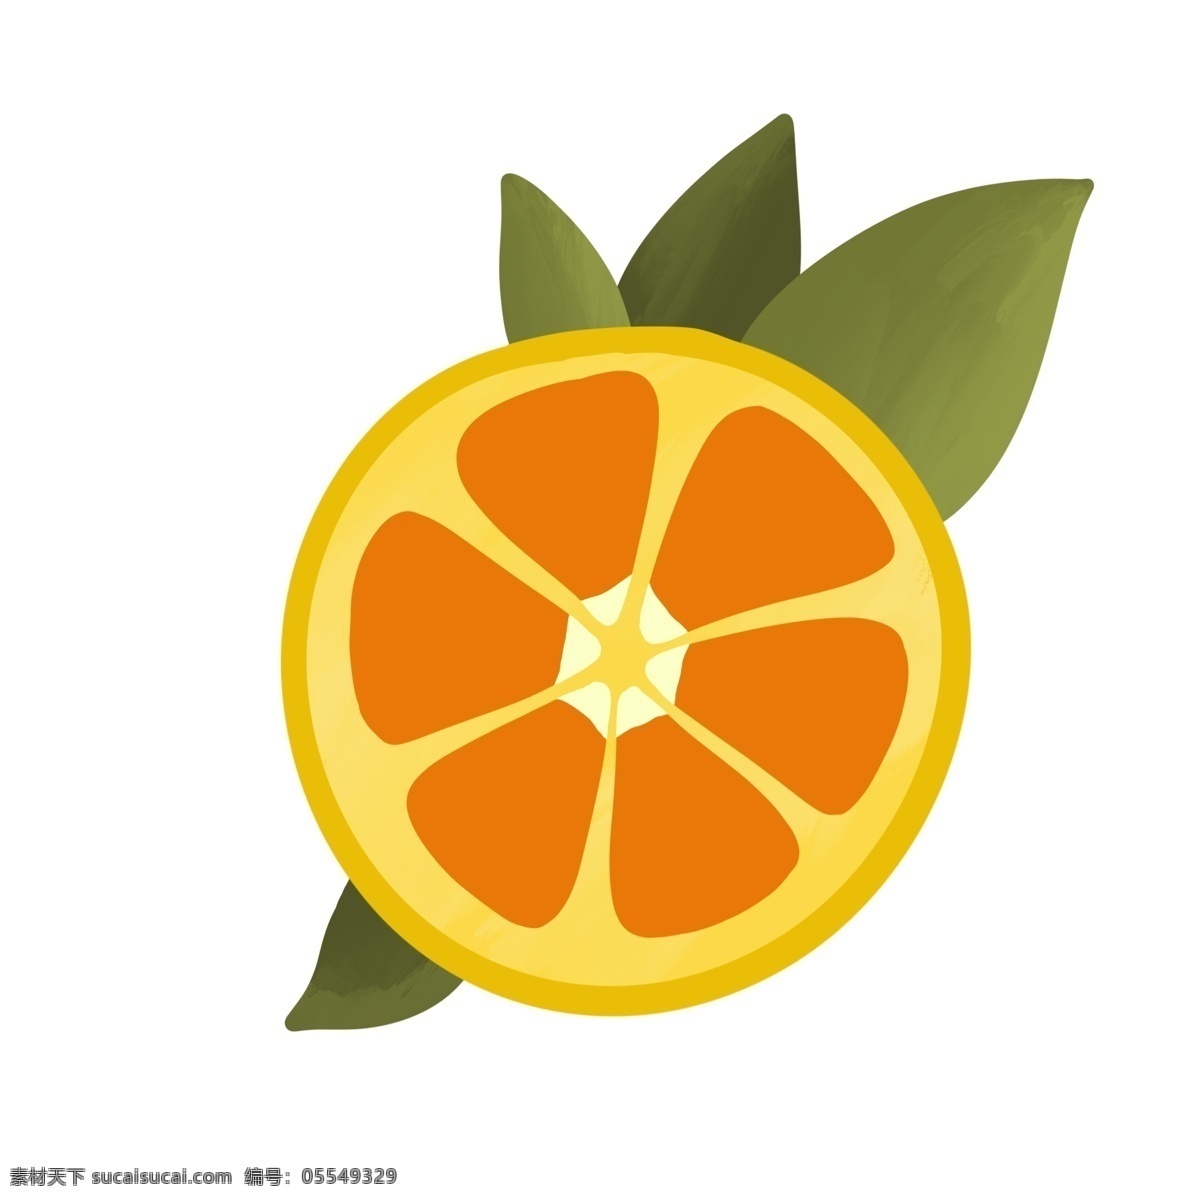 柠檬 橙子 手绘 插画 装饰 水果 菠萝 黄色 可爱 卡通 叶子 柠檬片 切水果 食物 小清新